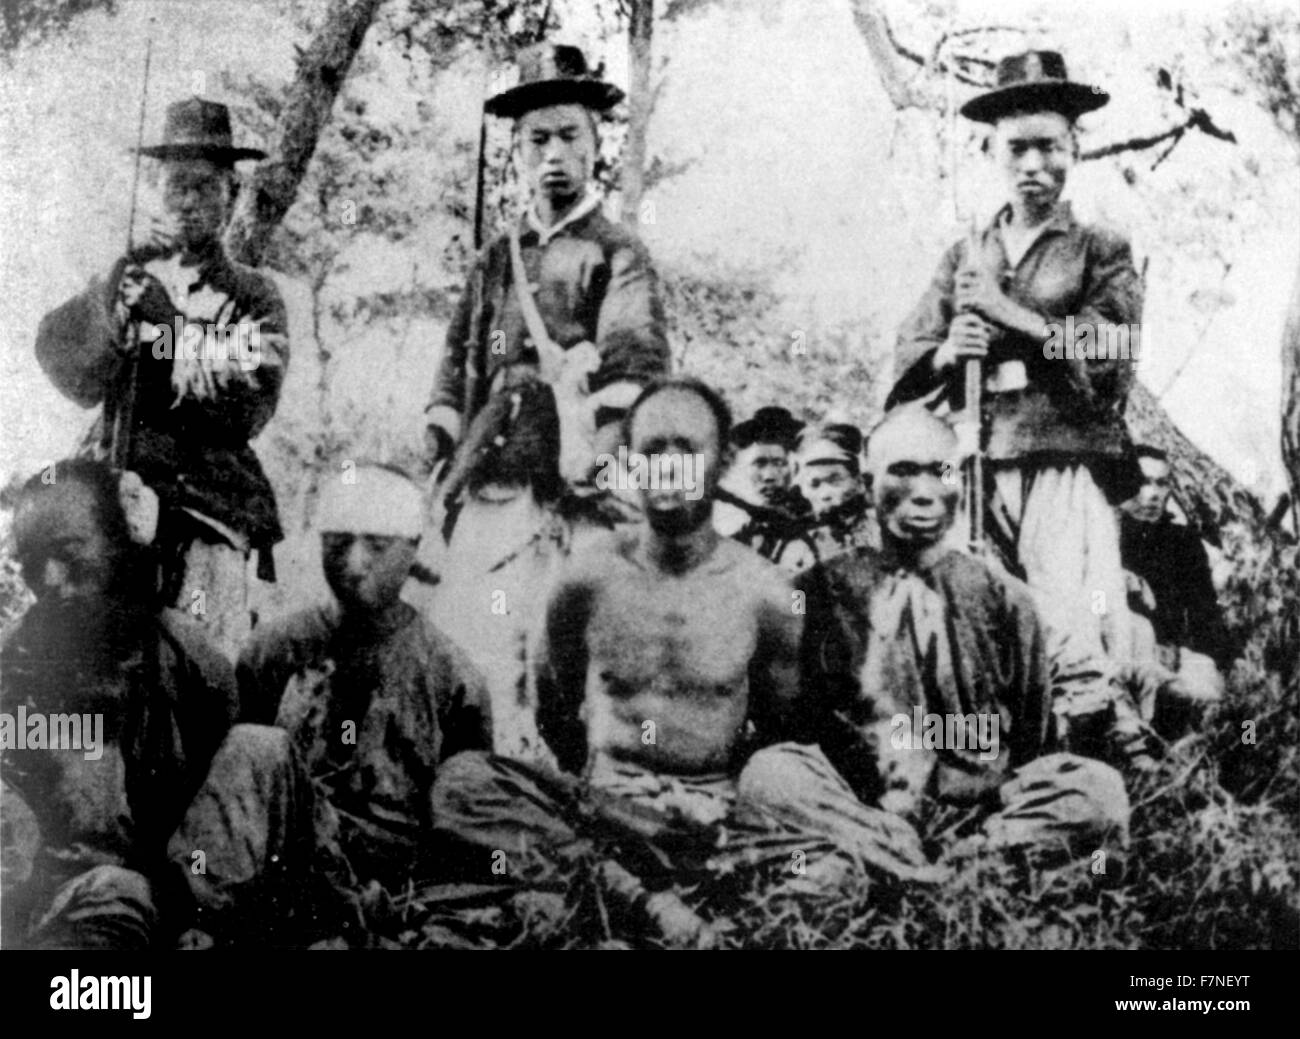 Foto von koreanischen Soldaten mit chinesischen Gefangenen während des ersten Japanisch-Chinesischen Krieges. Vom Jahre 1894 Stockfoto